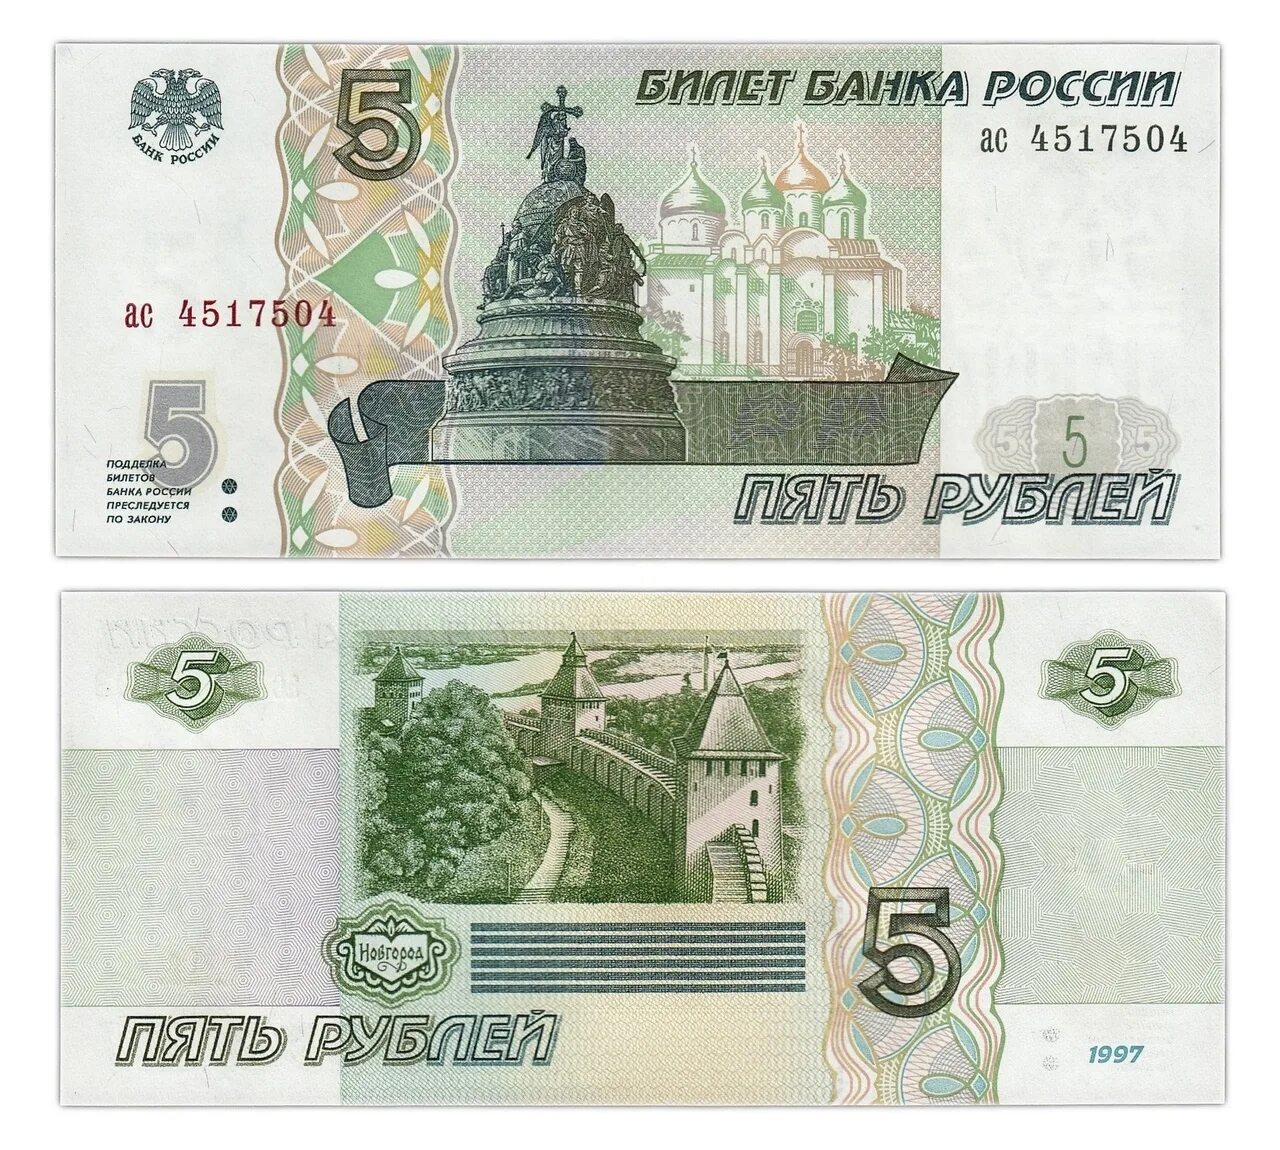 Банкнота 5 рублей. Изображение денежных купюр. Образцы денежных купюр. Банкнота 5 рублей образца 1997 года.